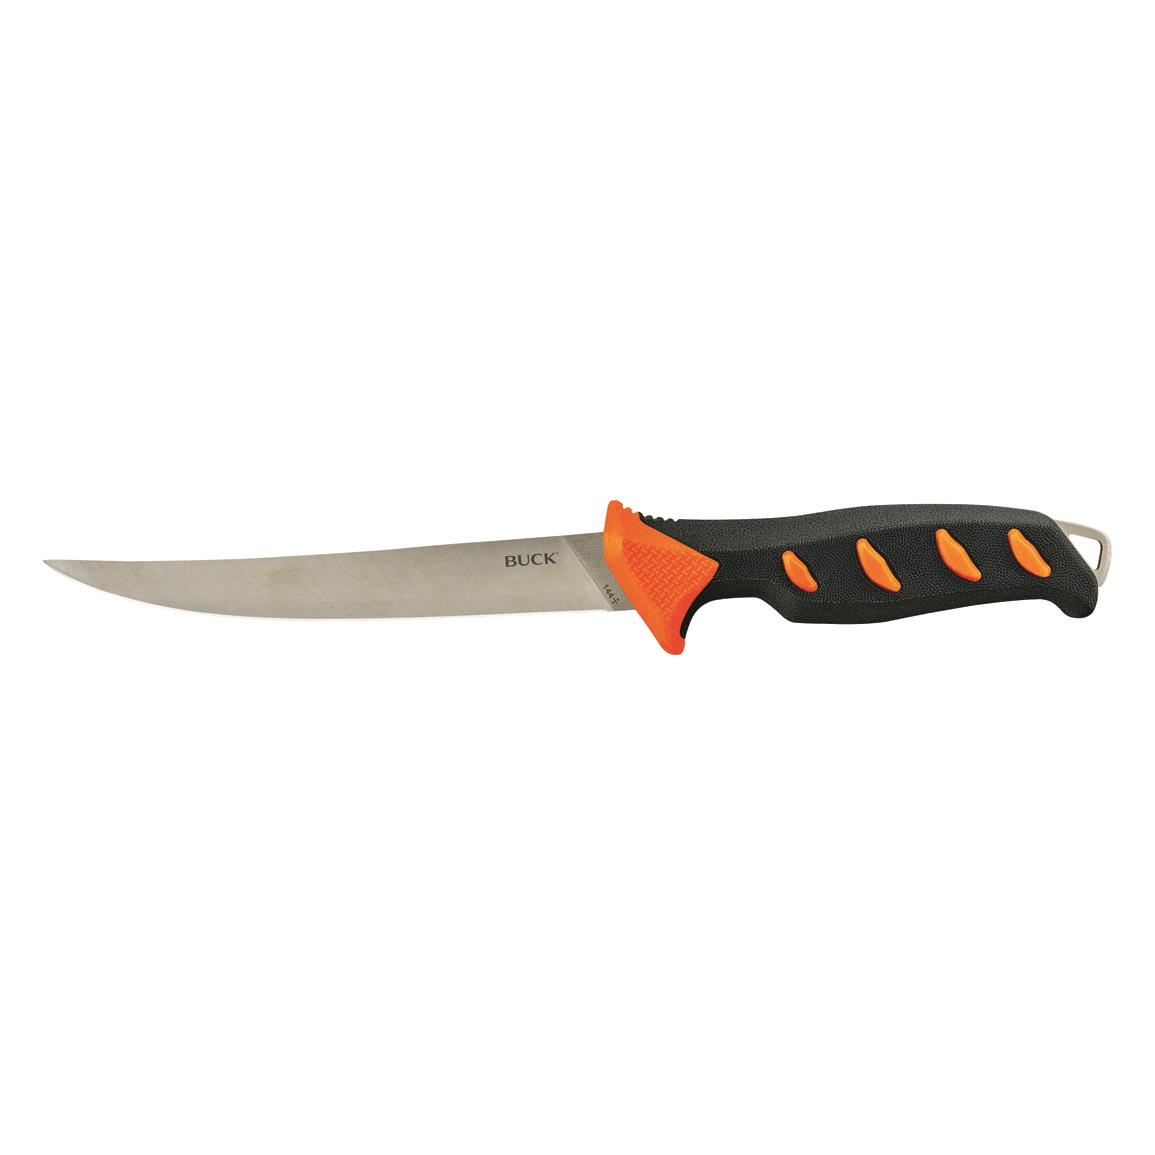 PENN 8 Standard Flex Fillet Knife - 726926, Fillet Knives at Sportsman's  Guide